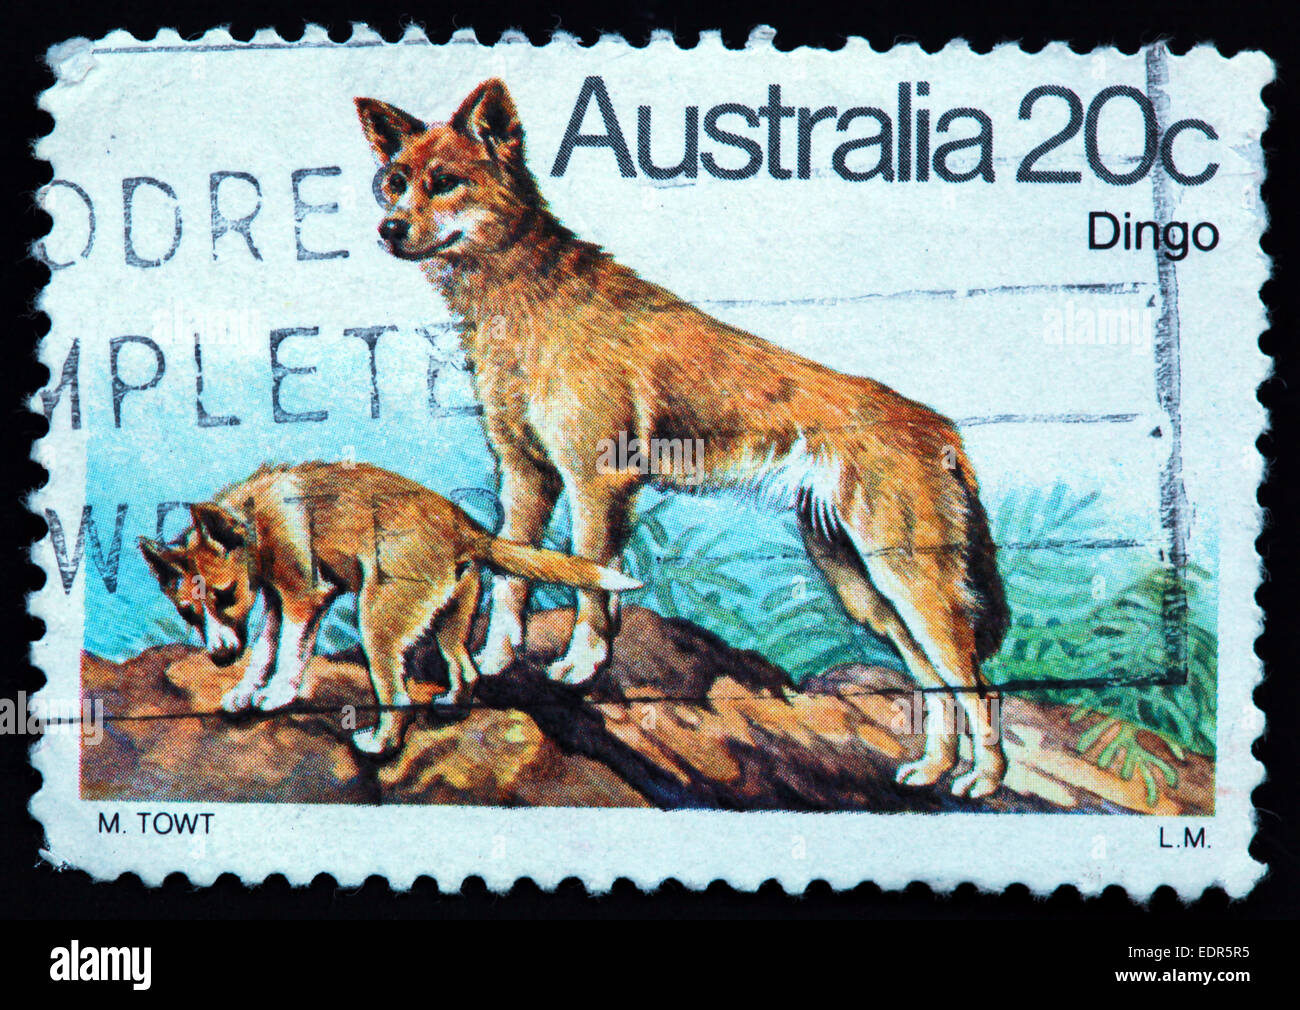 Usato e con timbro postale Australia / Timbro Austrailian 20c Dingo L.M LM M TOWT Foto Stock